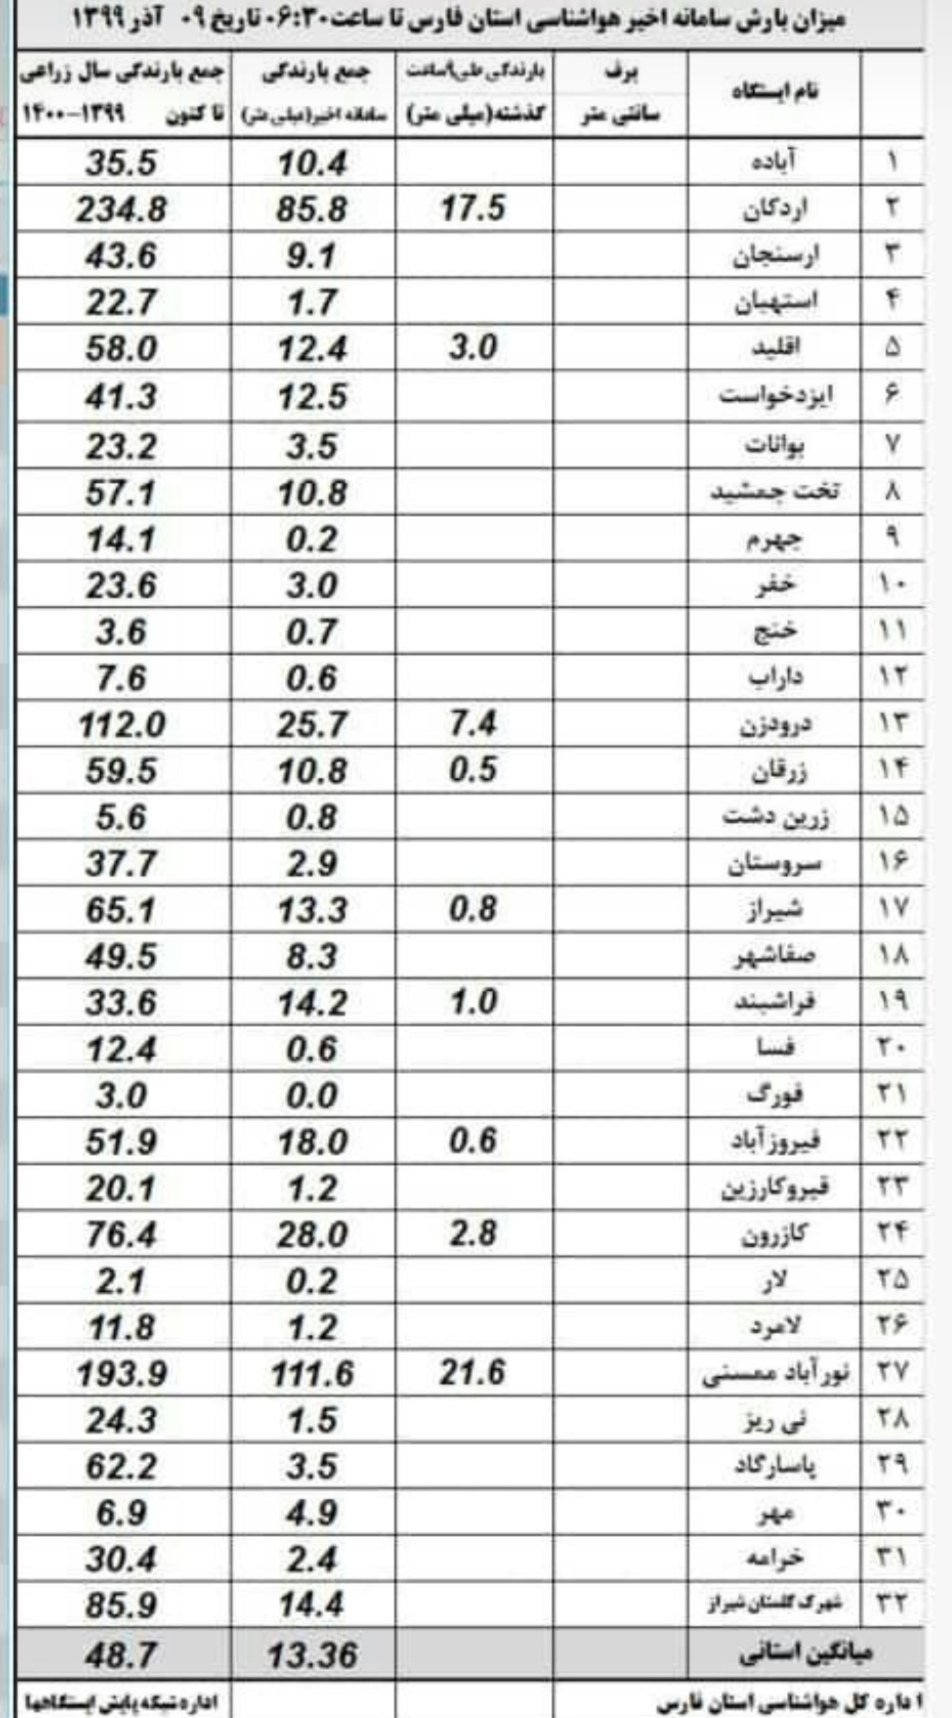 نورآباد ممسنی رکورددار بیشترین میزان بارش در استان فارس